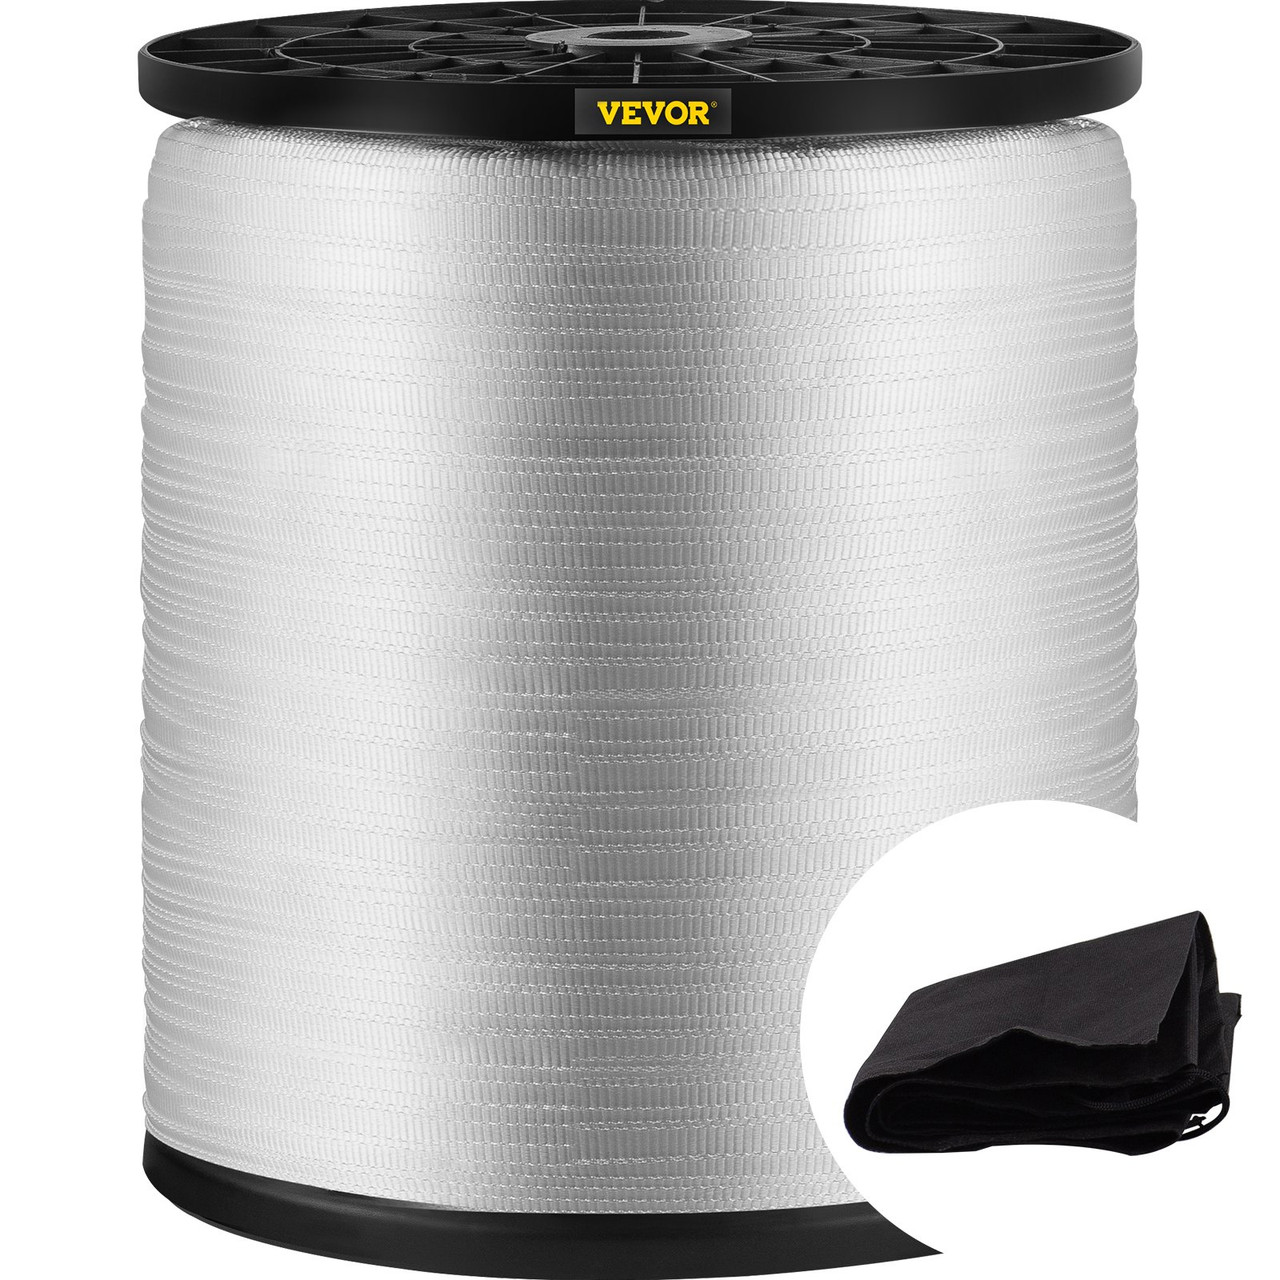 VEVOR 528 ft. x 1/2 in. Polyester Pull Tape 1250 lbs. Tensile Capacity Flat Tape for Pulling Loading Packing, White, Men's